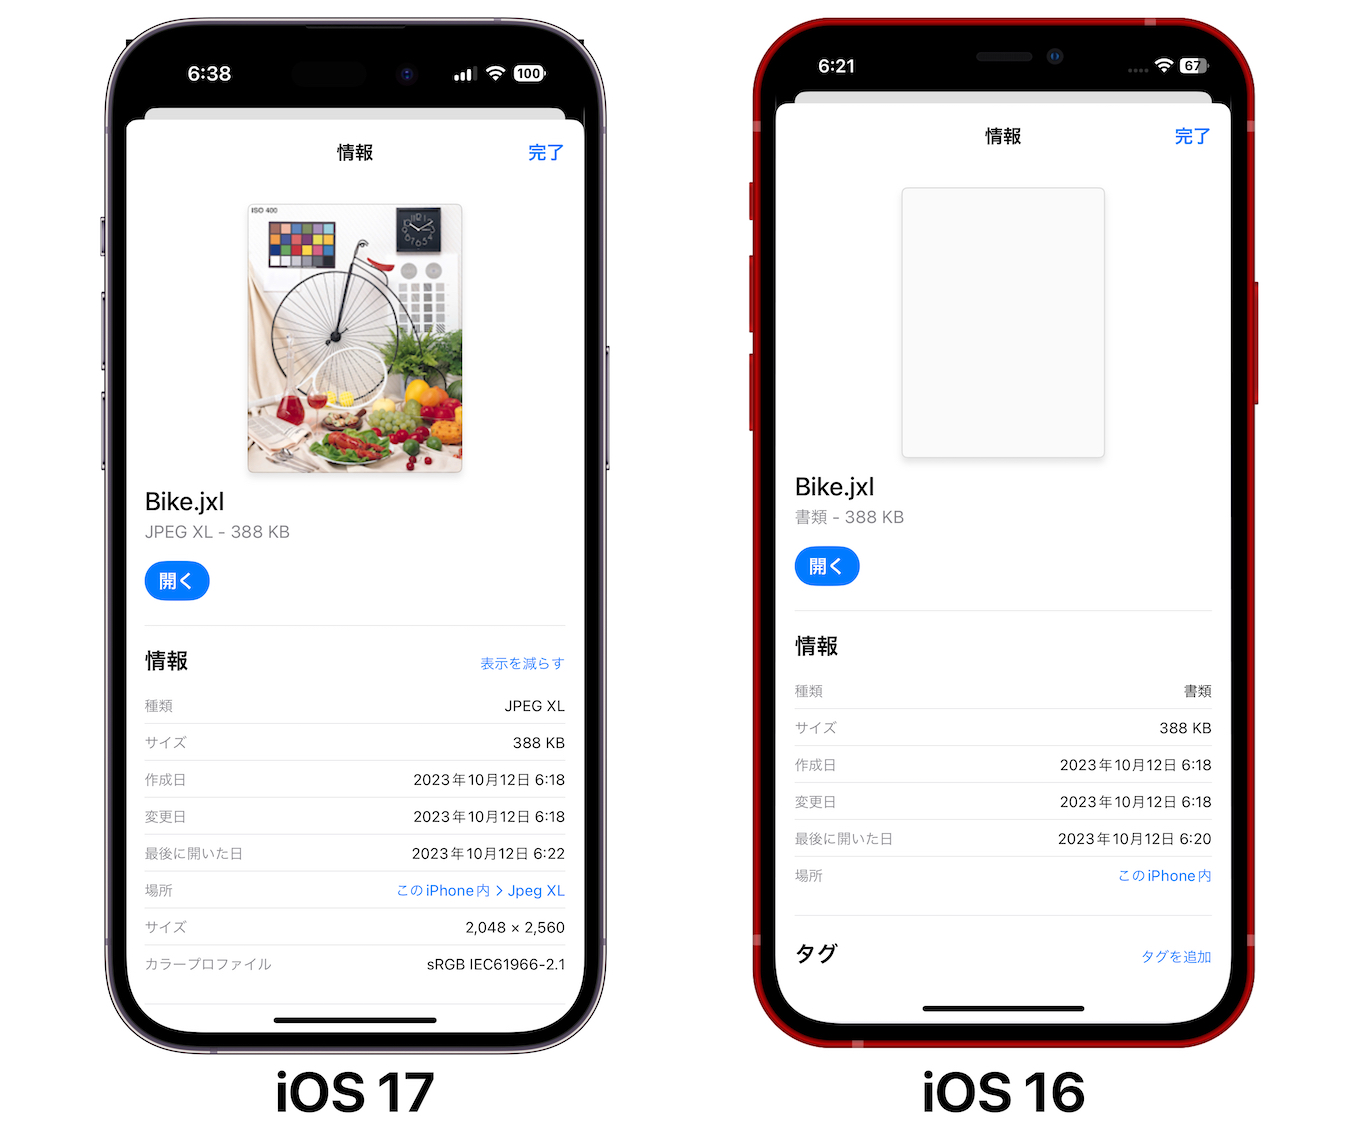 JPEG XL iOS17 and iOS16